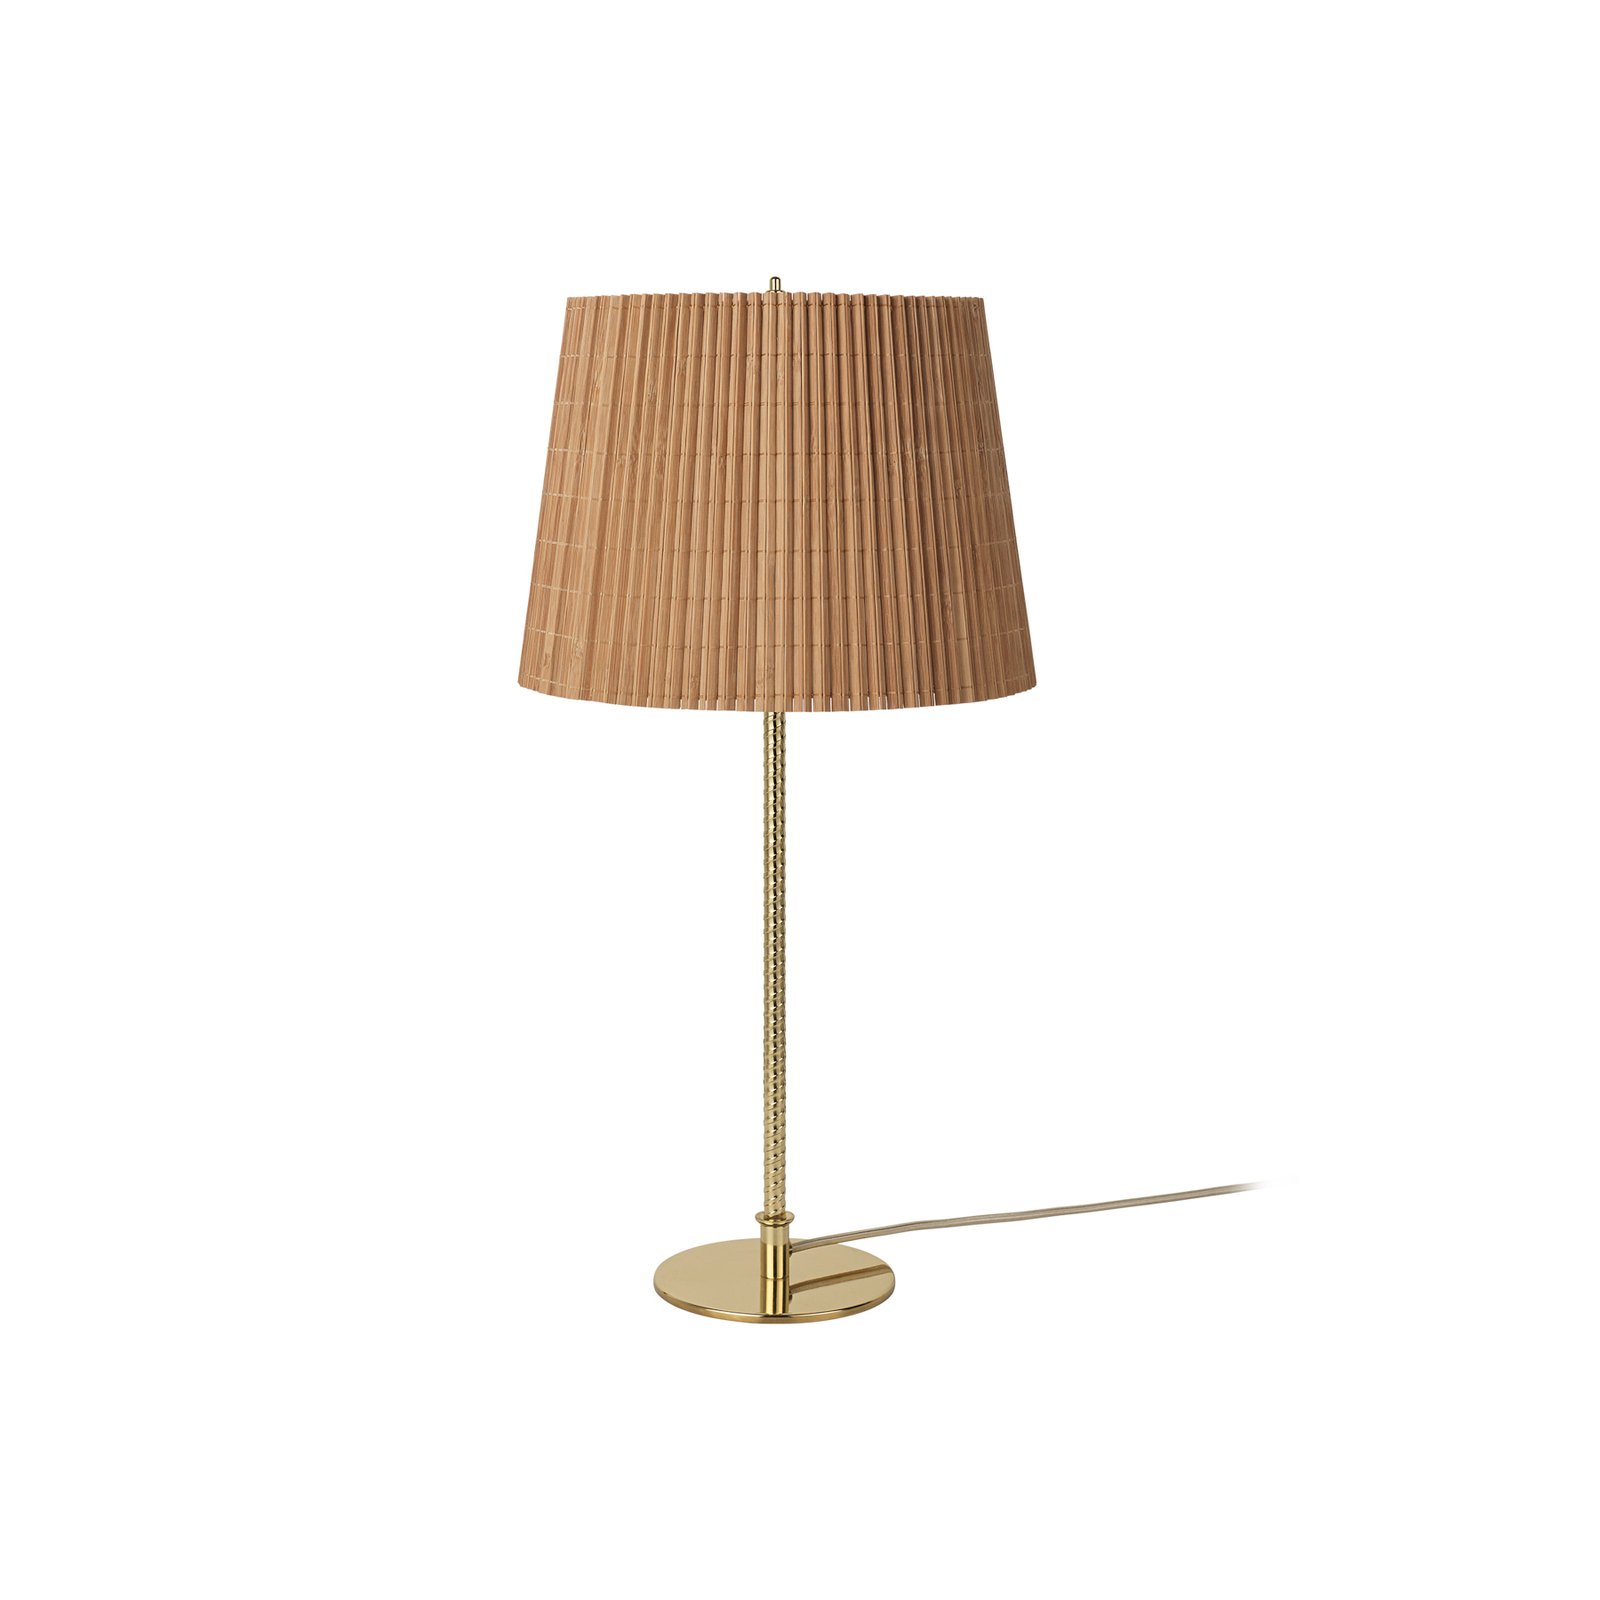 GUBI lampe à poser 9205, laiton, abat-jour en bambou, hauteur 58 cm